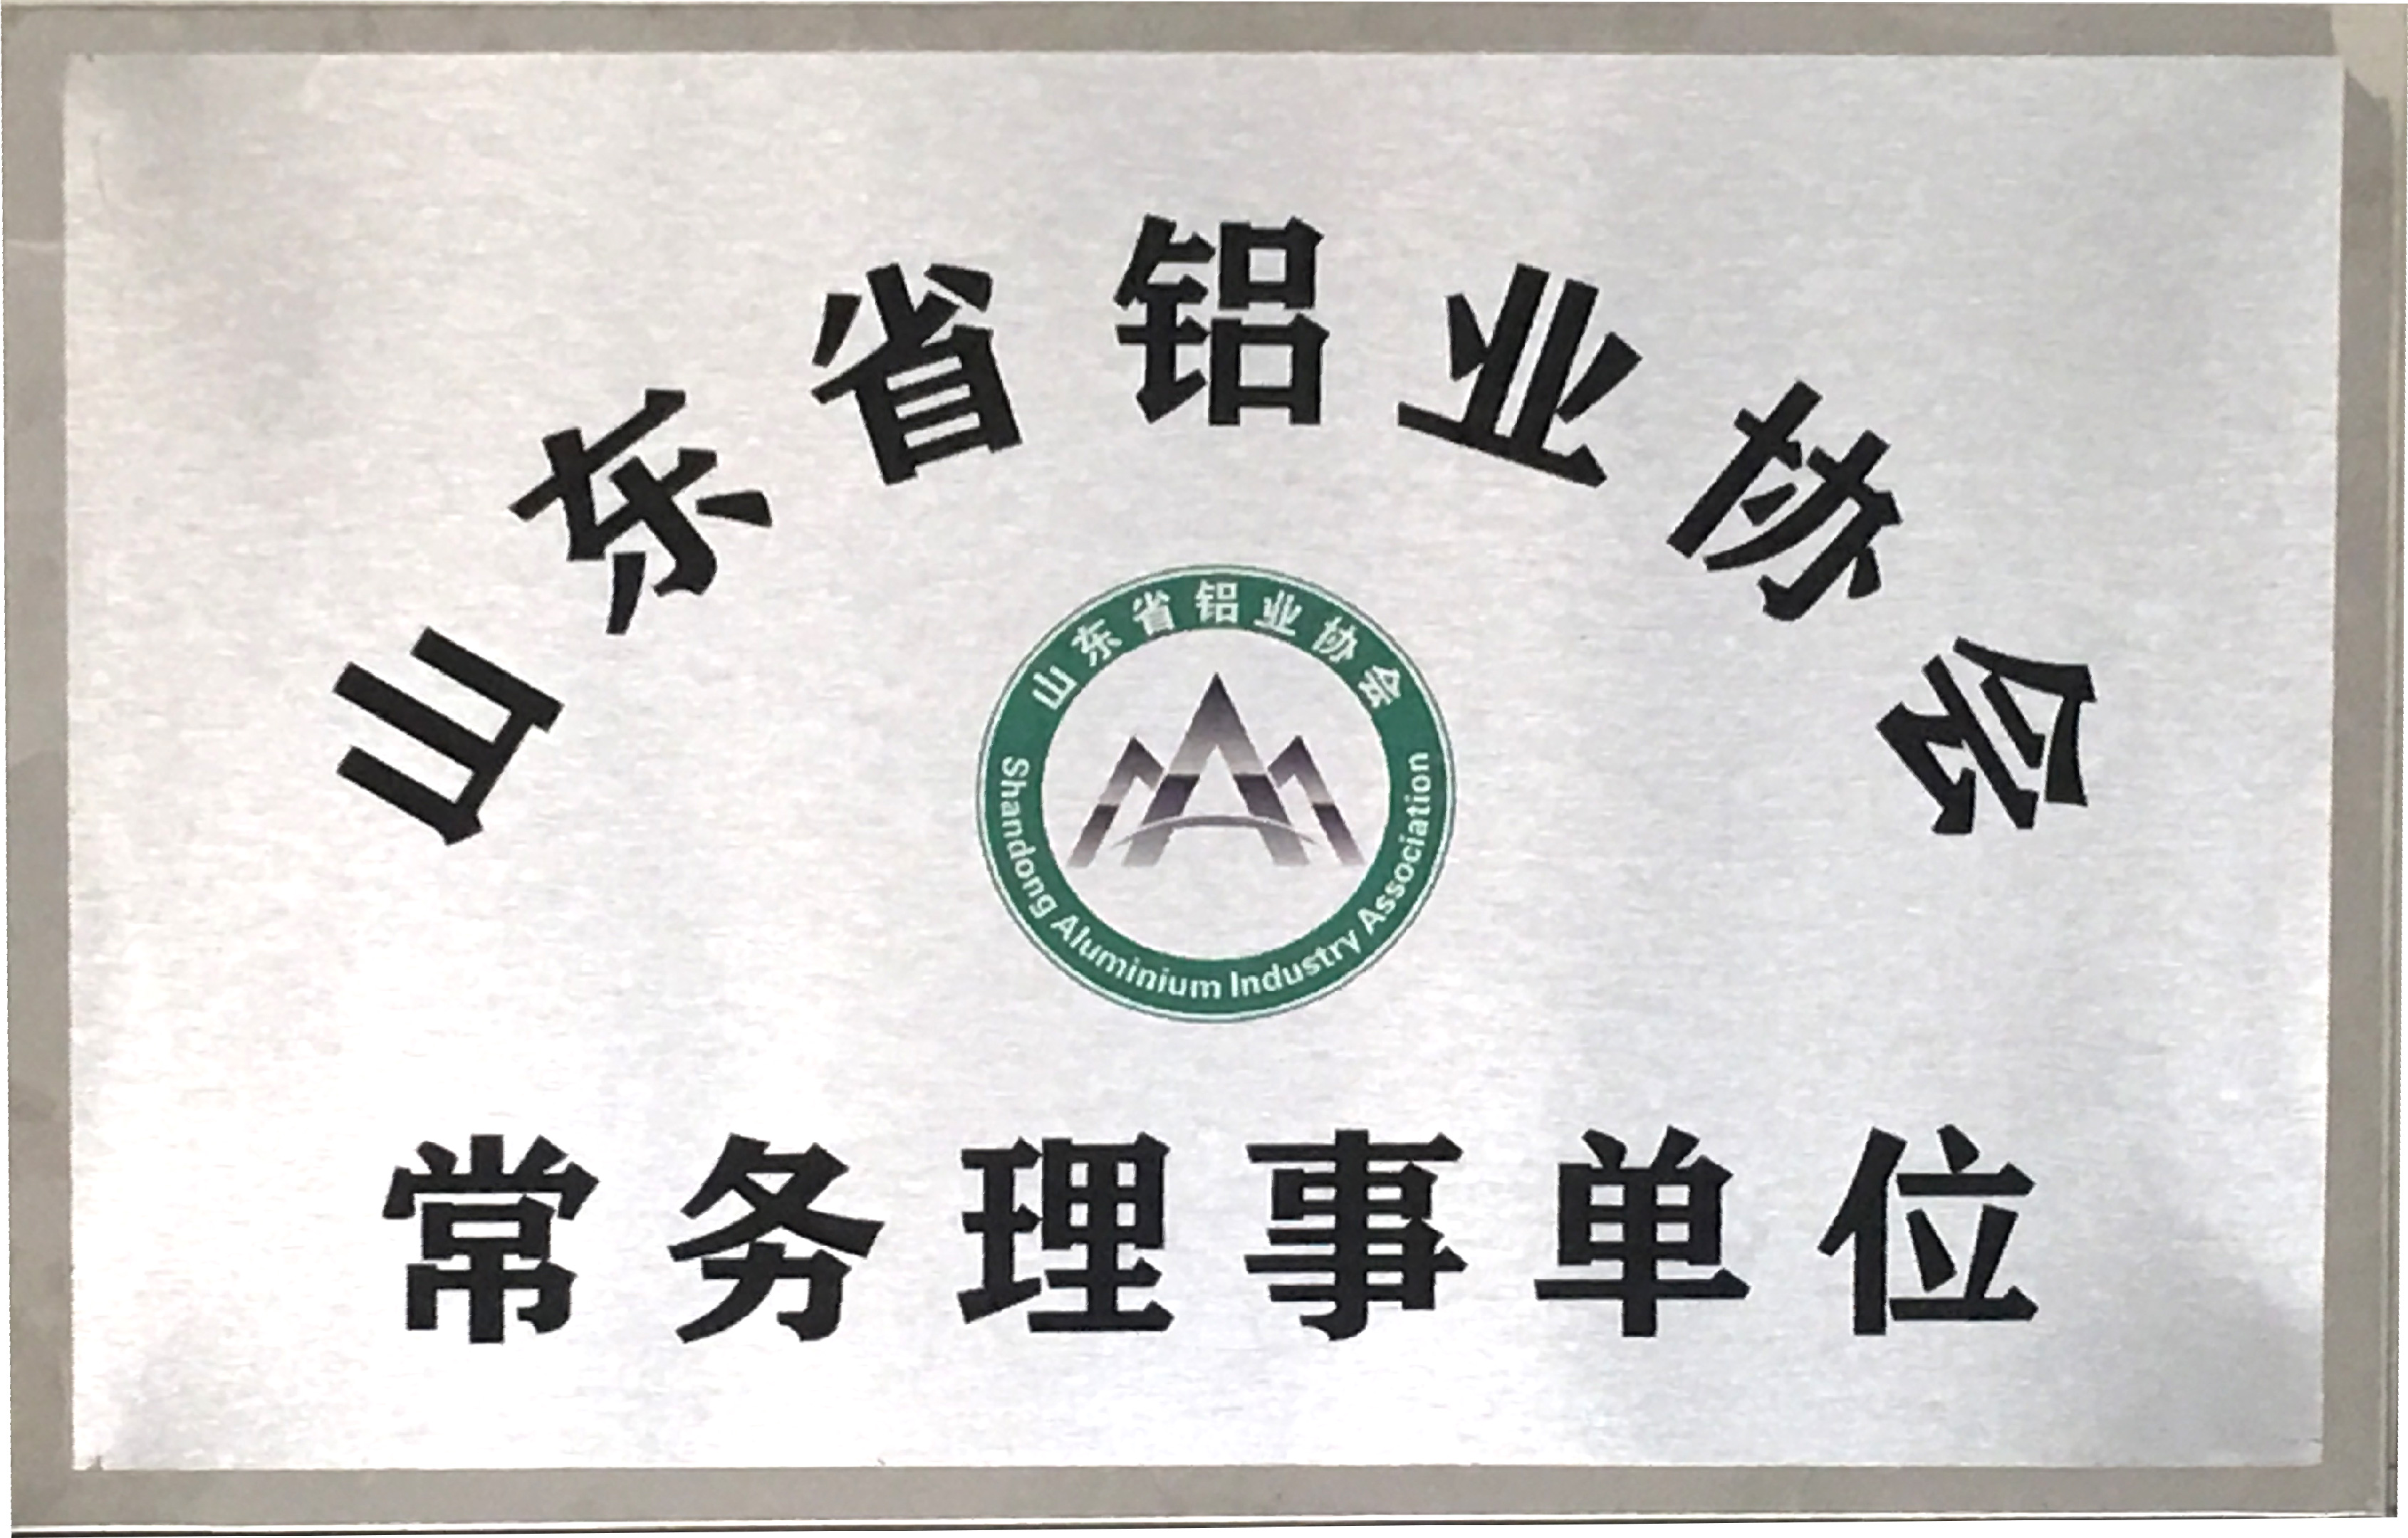 山東省鋁業協會常務理事單位